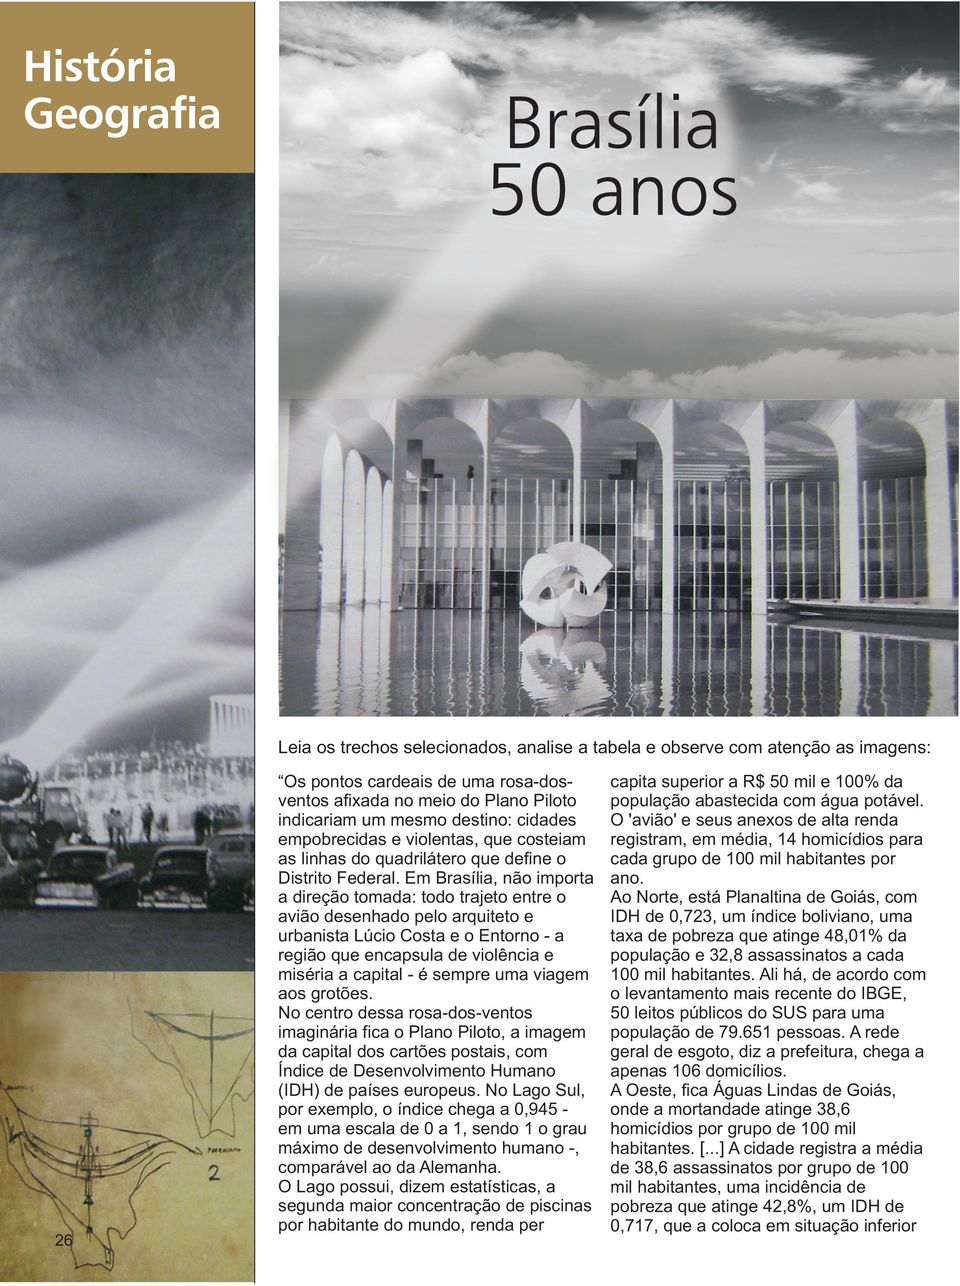 Em Brasília, não importa a direção tomada: todo trajeto entre o avião desenhado pelo arquiteto e urbanista Lúcio Costa e o Entorno - a região que encapsula de violência e miséria a capital - é sempre